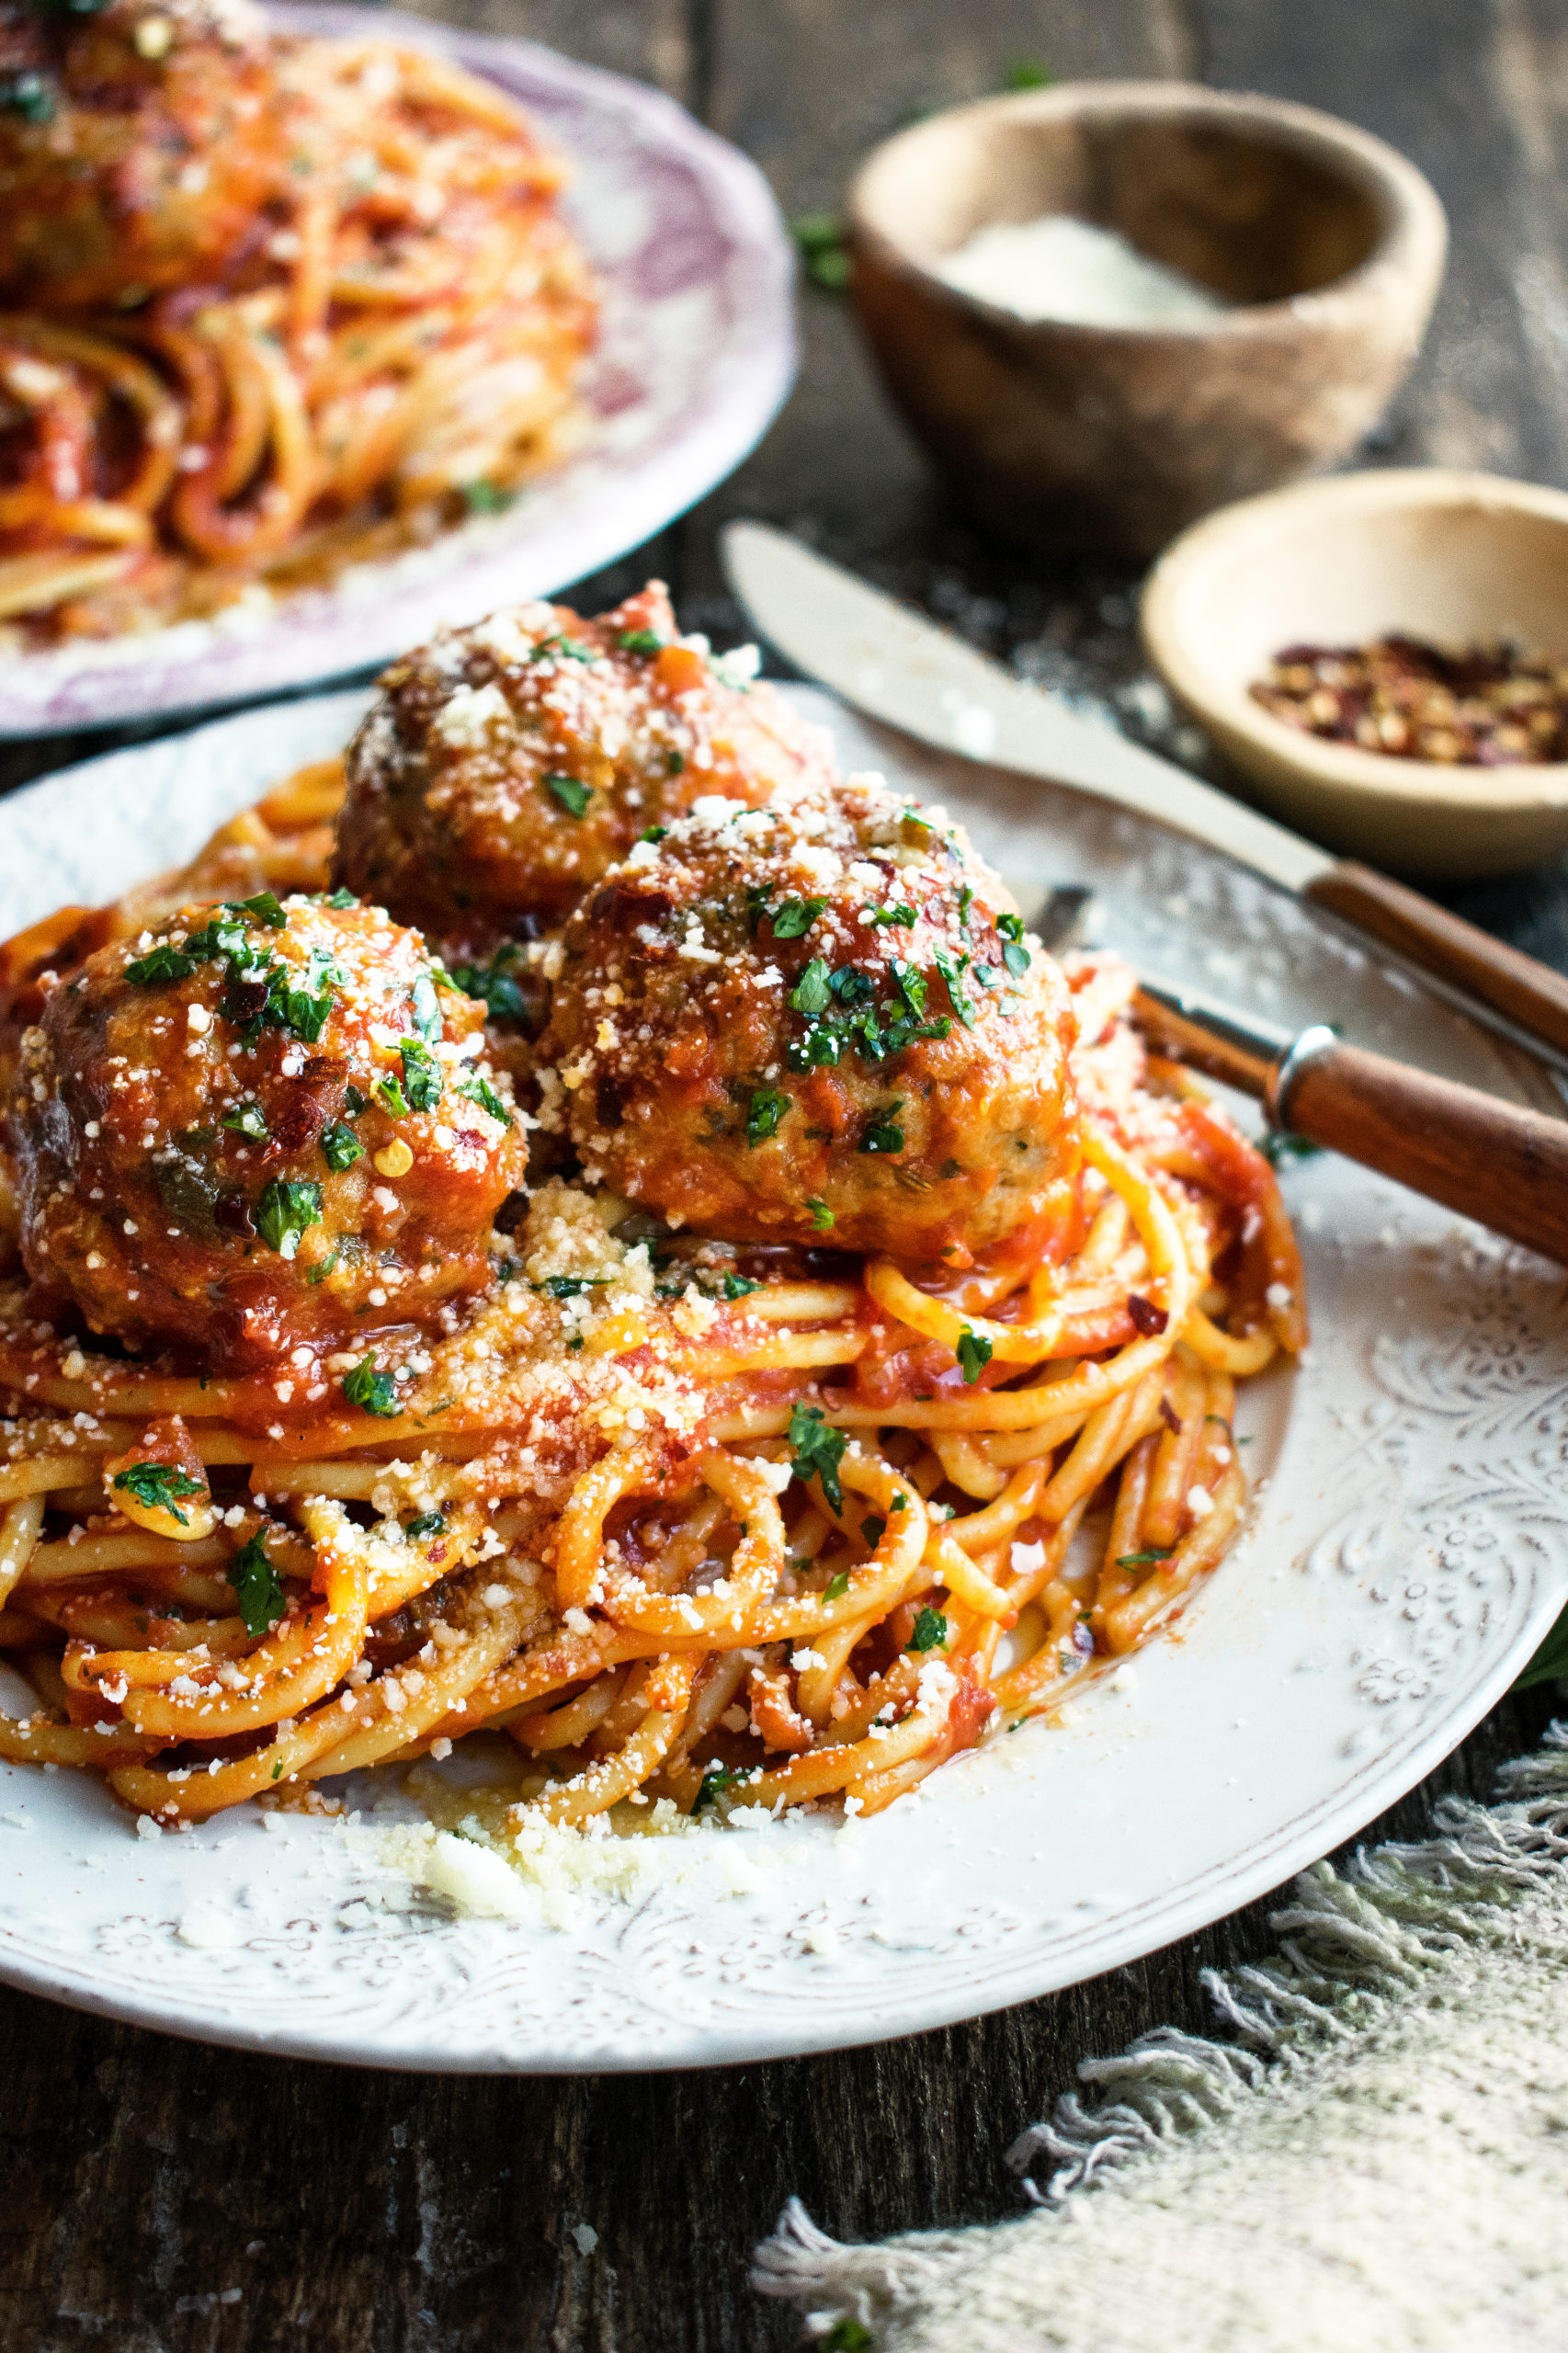 Spaghetti & Meatballs with Spicy Tomato Sauce - The Original Dish